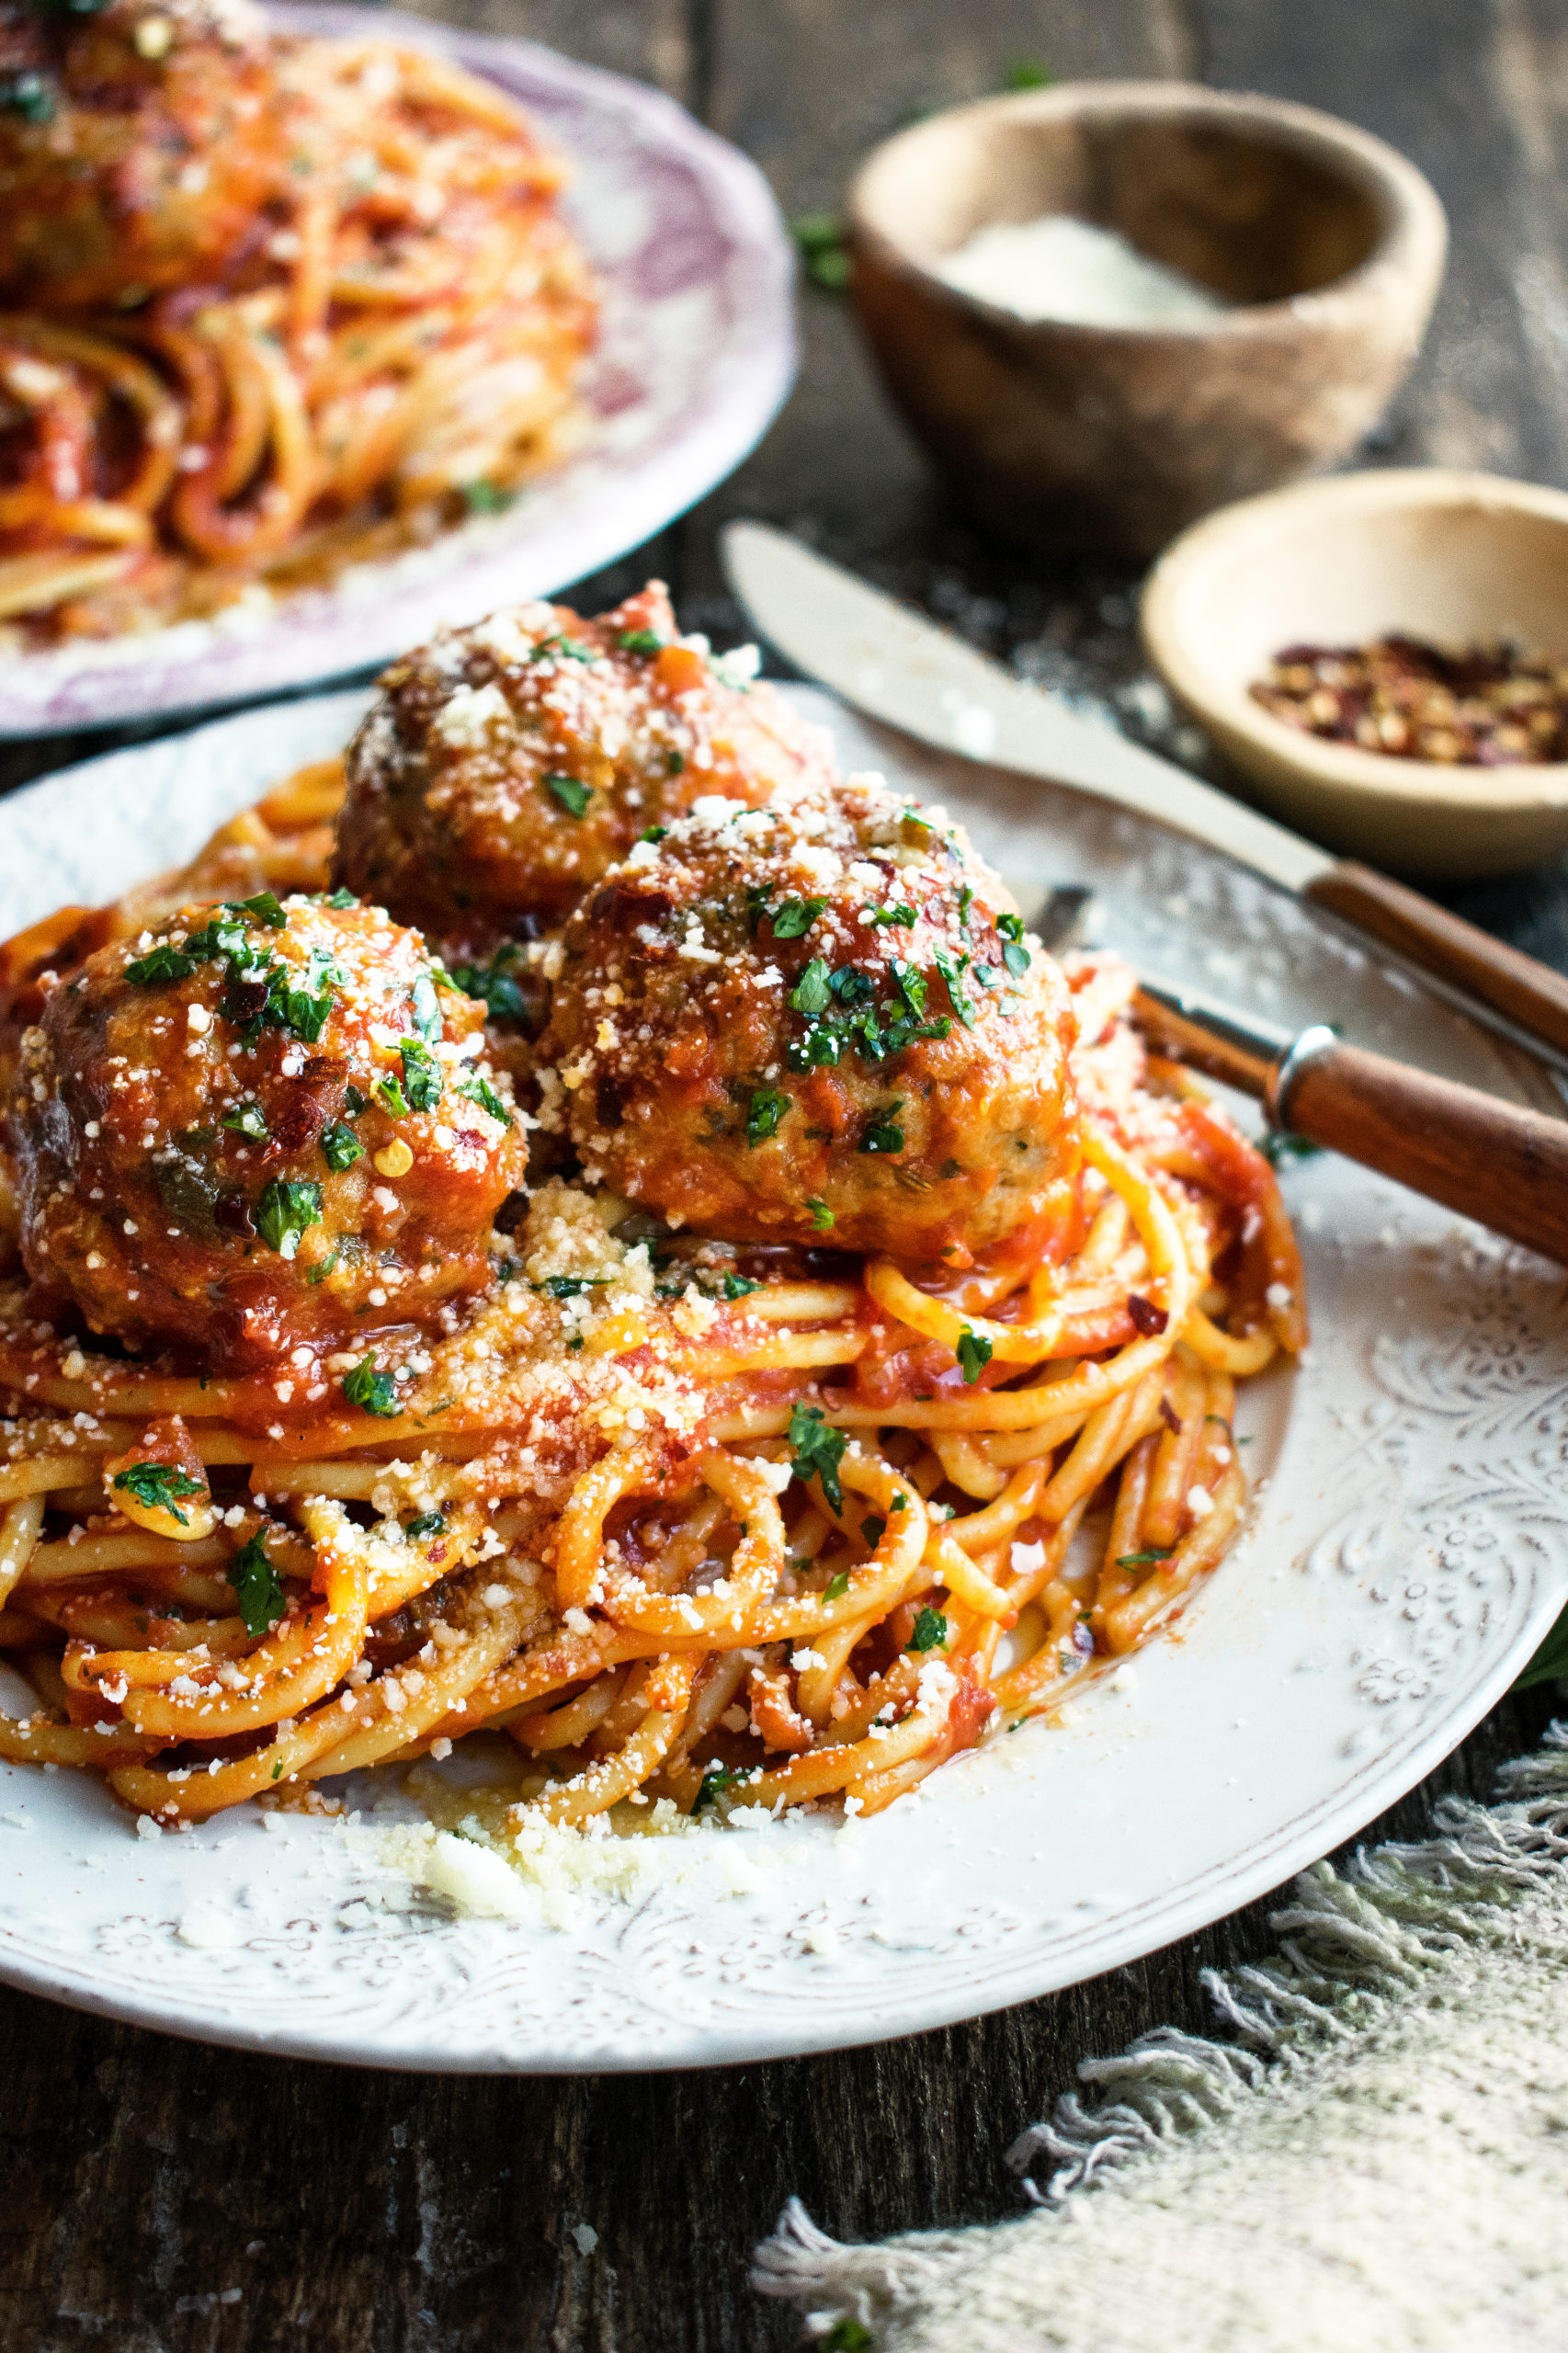 Spaghetti & Meatballs with Spicy Tomato Sauce - The Original Dish